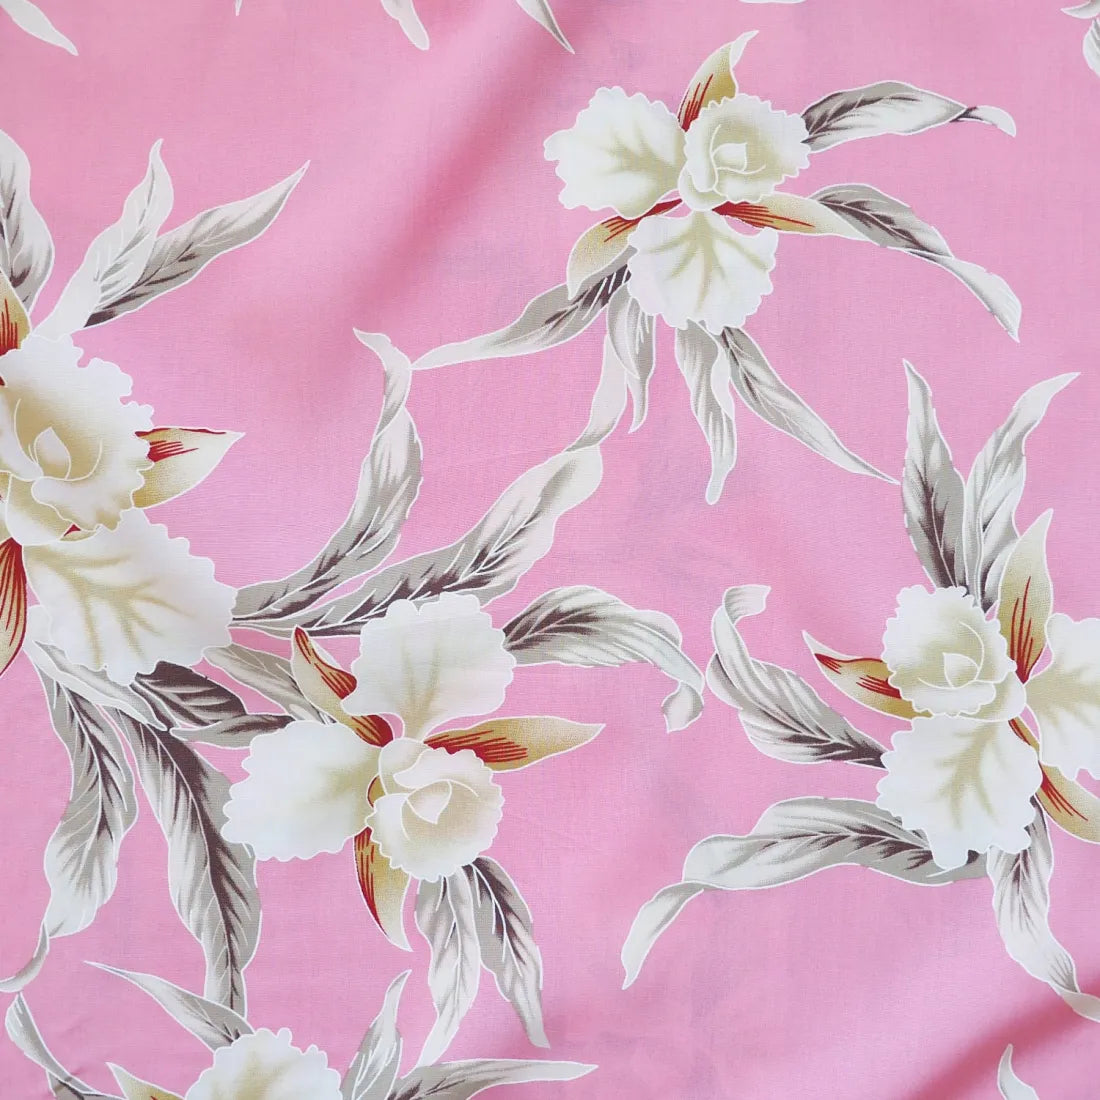 Mele Pink Hawaiian Rayon Fabric By The Yard - Made In Hawaii